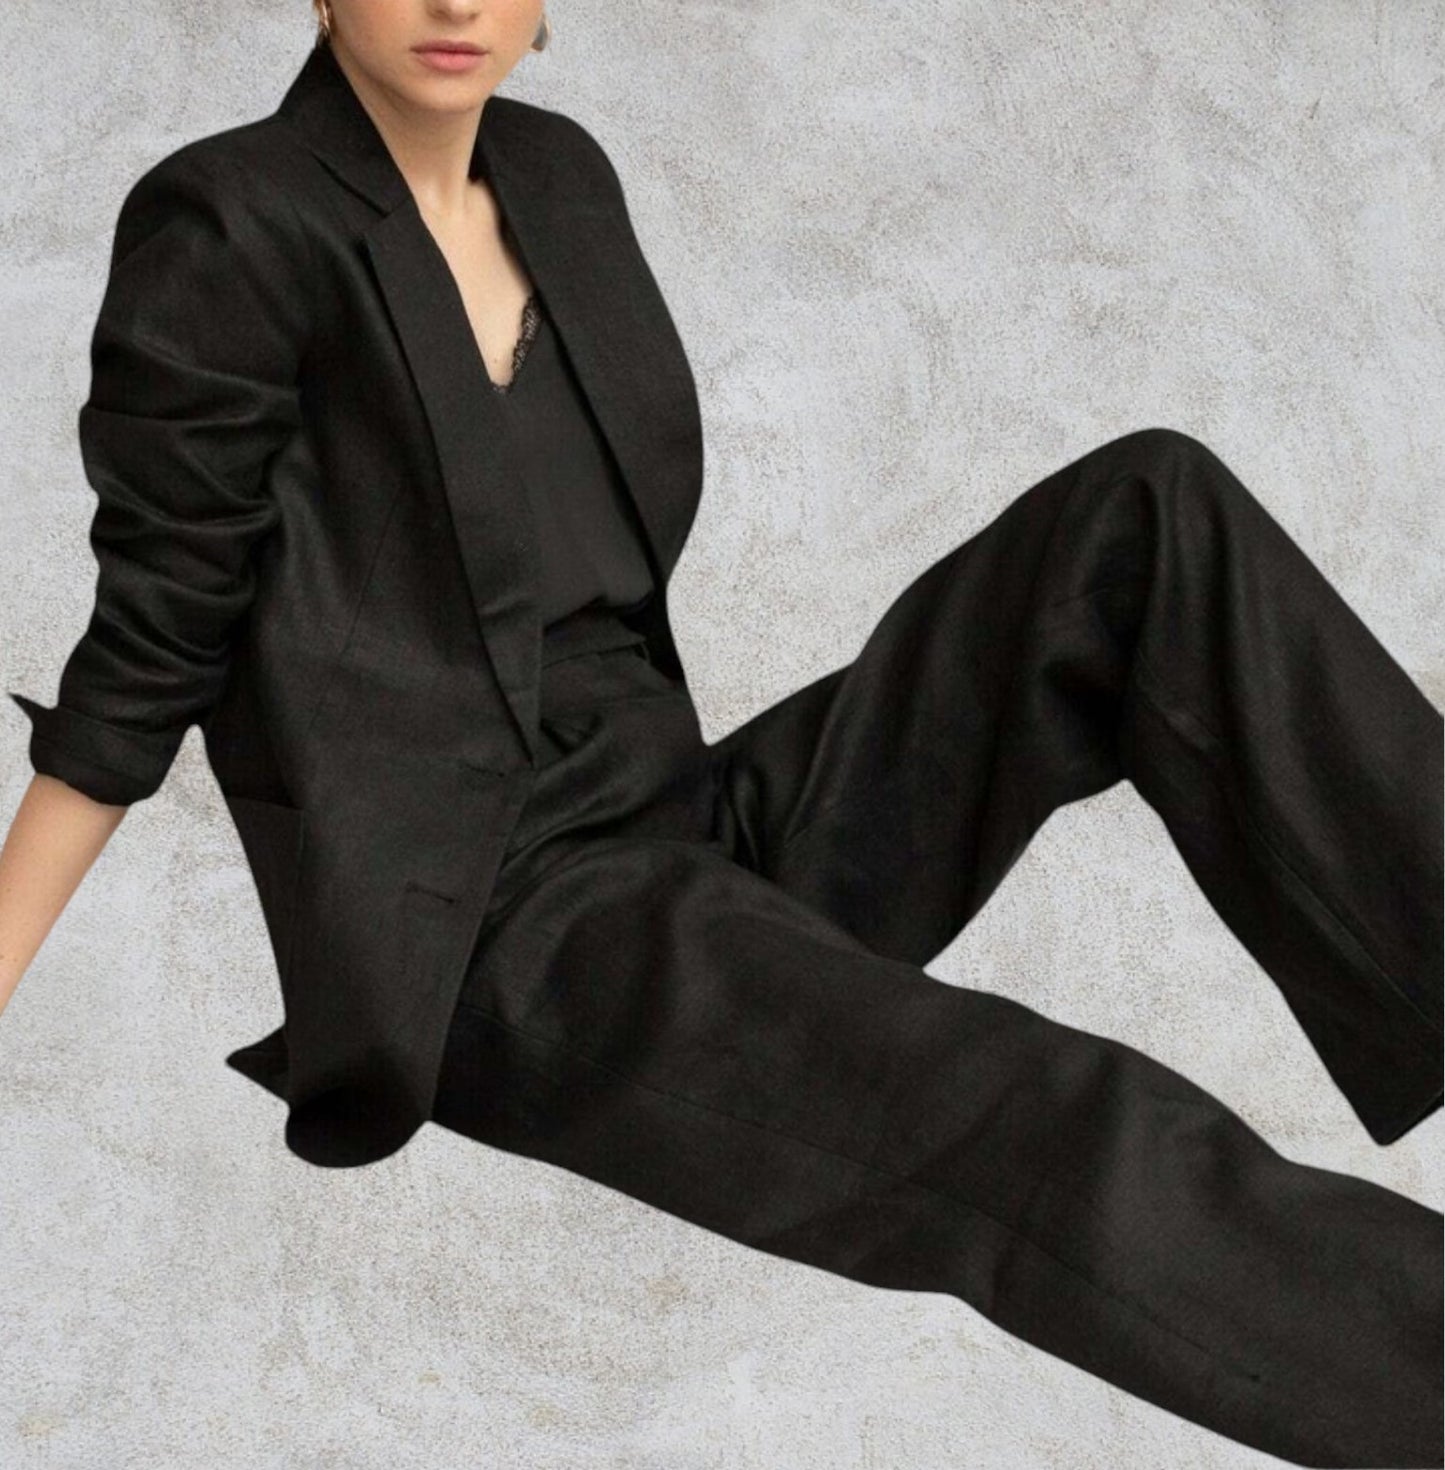 Pomodoro Black Linen Straight Leg Trousers UK 10 EU 38 US 6 RRP £69.95 Timeless Fashions